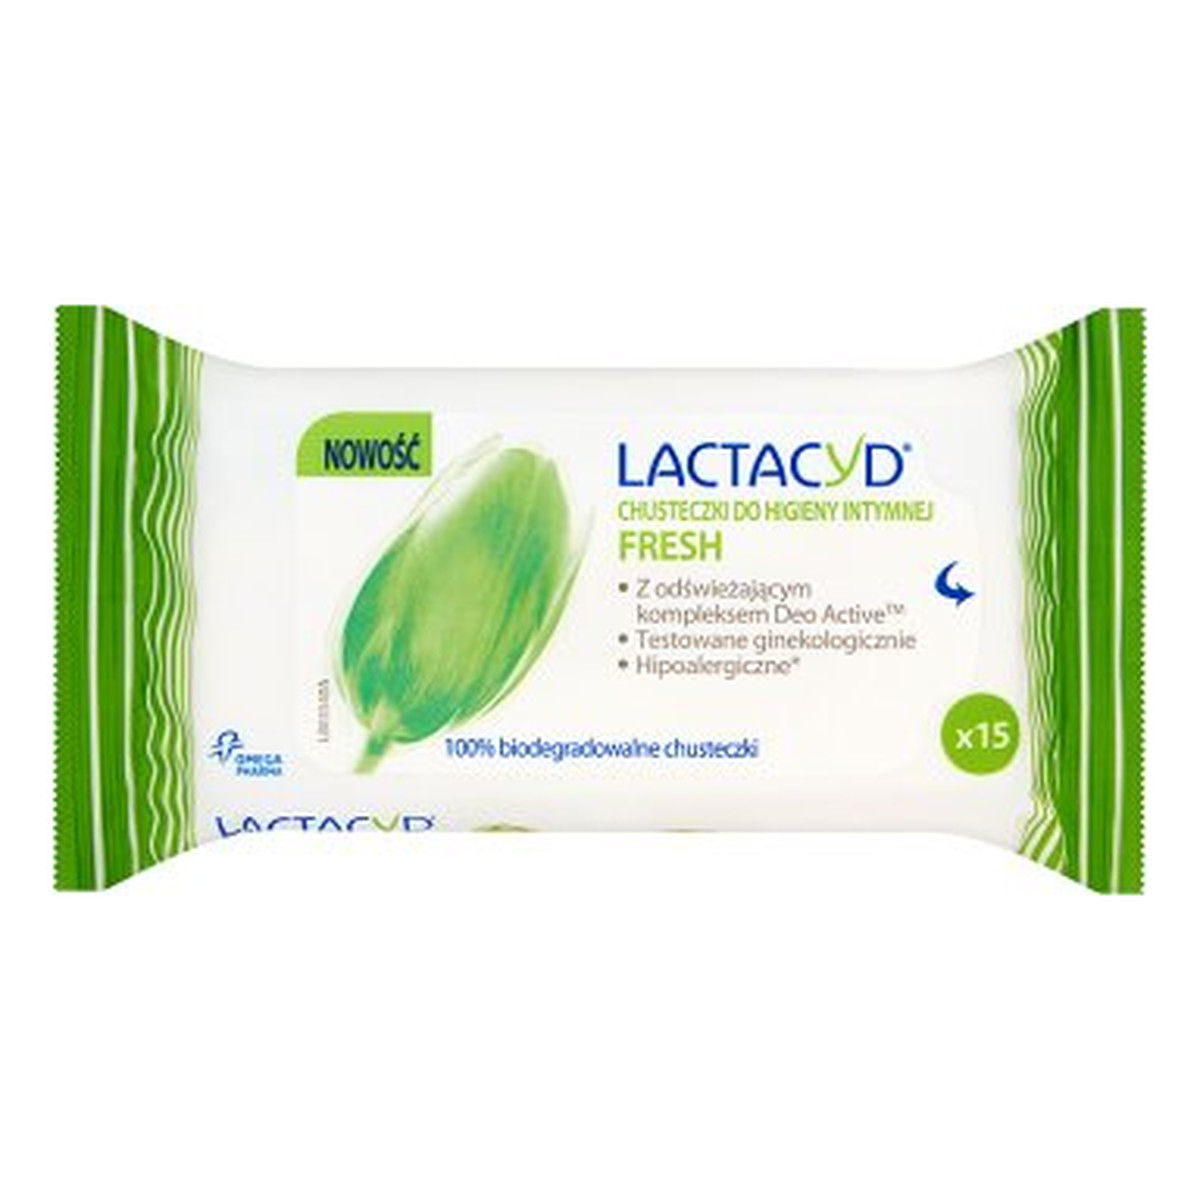 Lactacyd Fresh Chusteczki Do Higieny Intymnej 15szt.